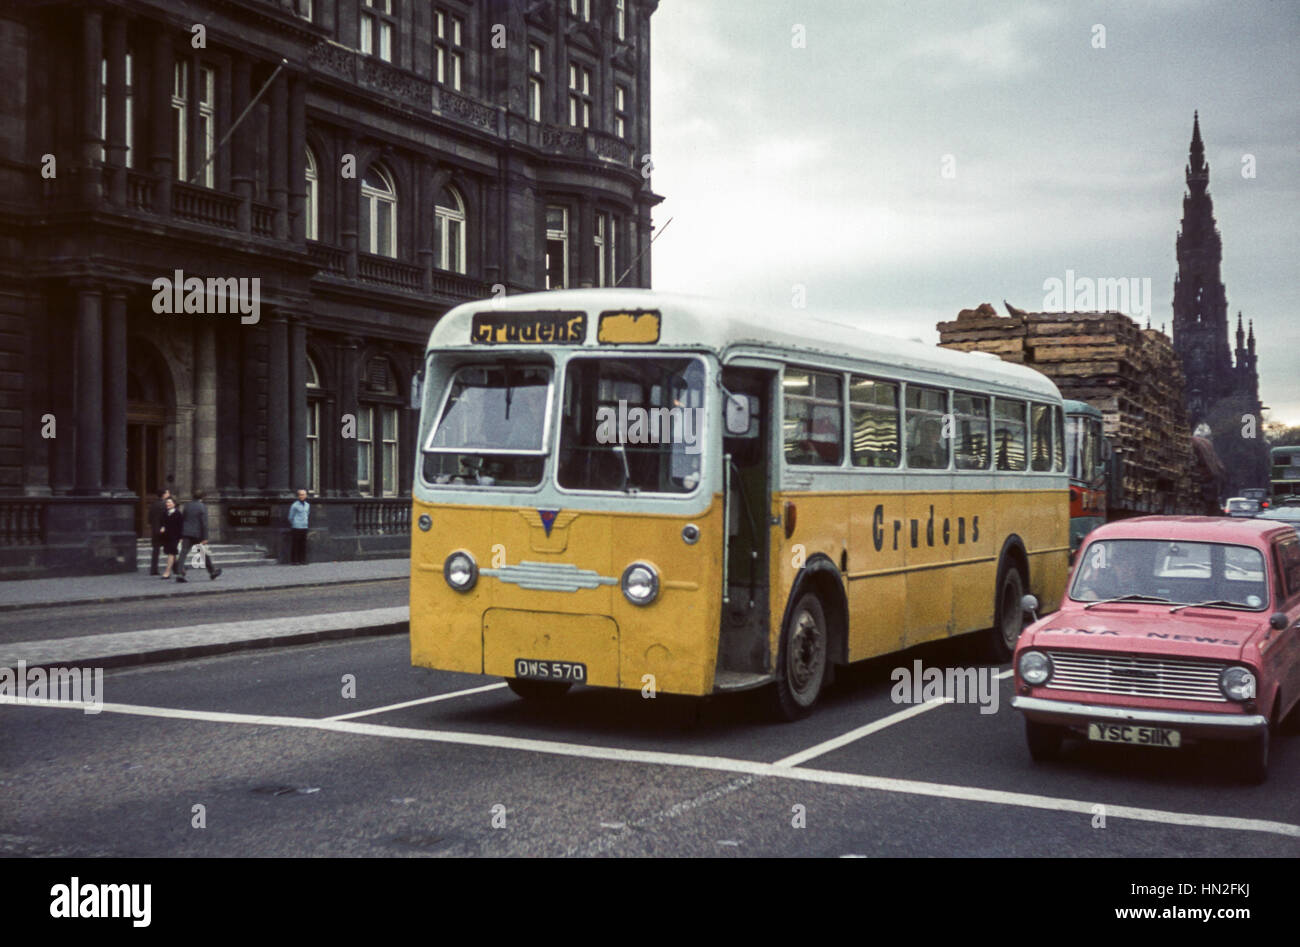 Edimburgo, Reino Unido - 1973: Vintage imagen de autobús en la calle Princes Street en Edimburgo. Scottish Omnibuses monocoach operado por el contratista Crudens B570 (número de registro OWS570). Foto de stock